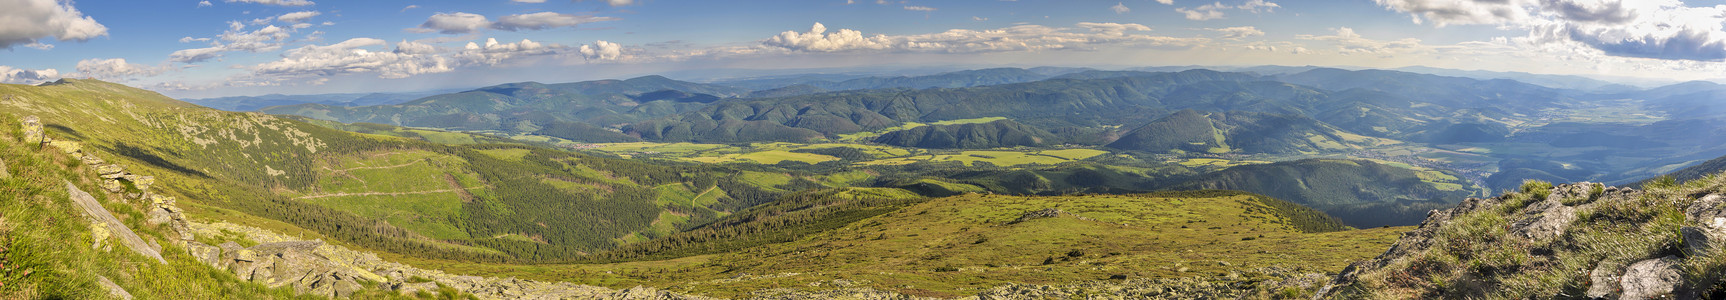 斯洛伐克山谷山脉顶峰森林风景树木丘陵首脑晴天山顶高清图片